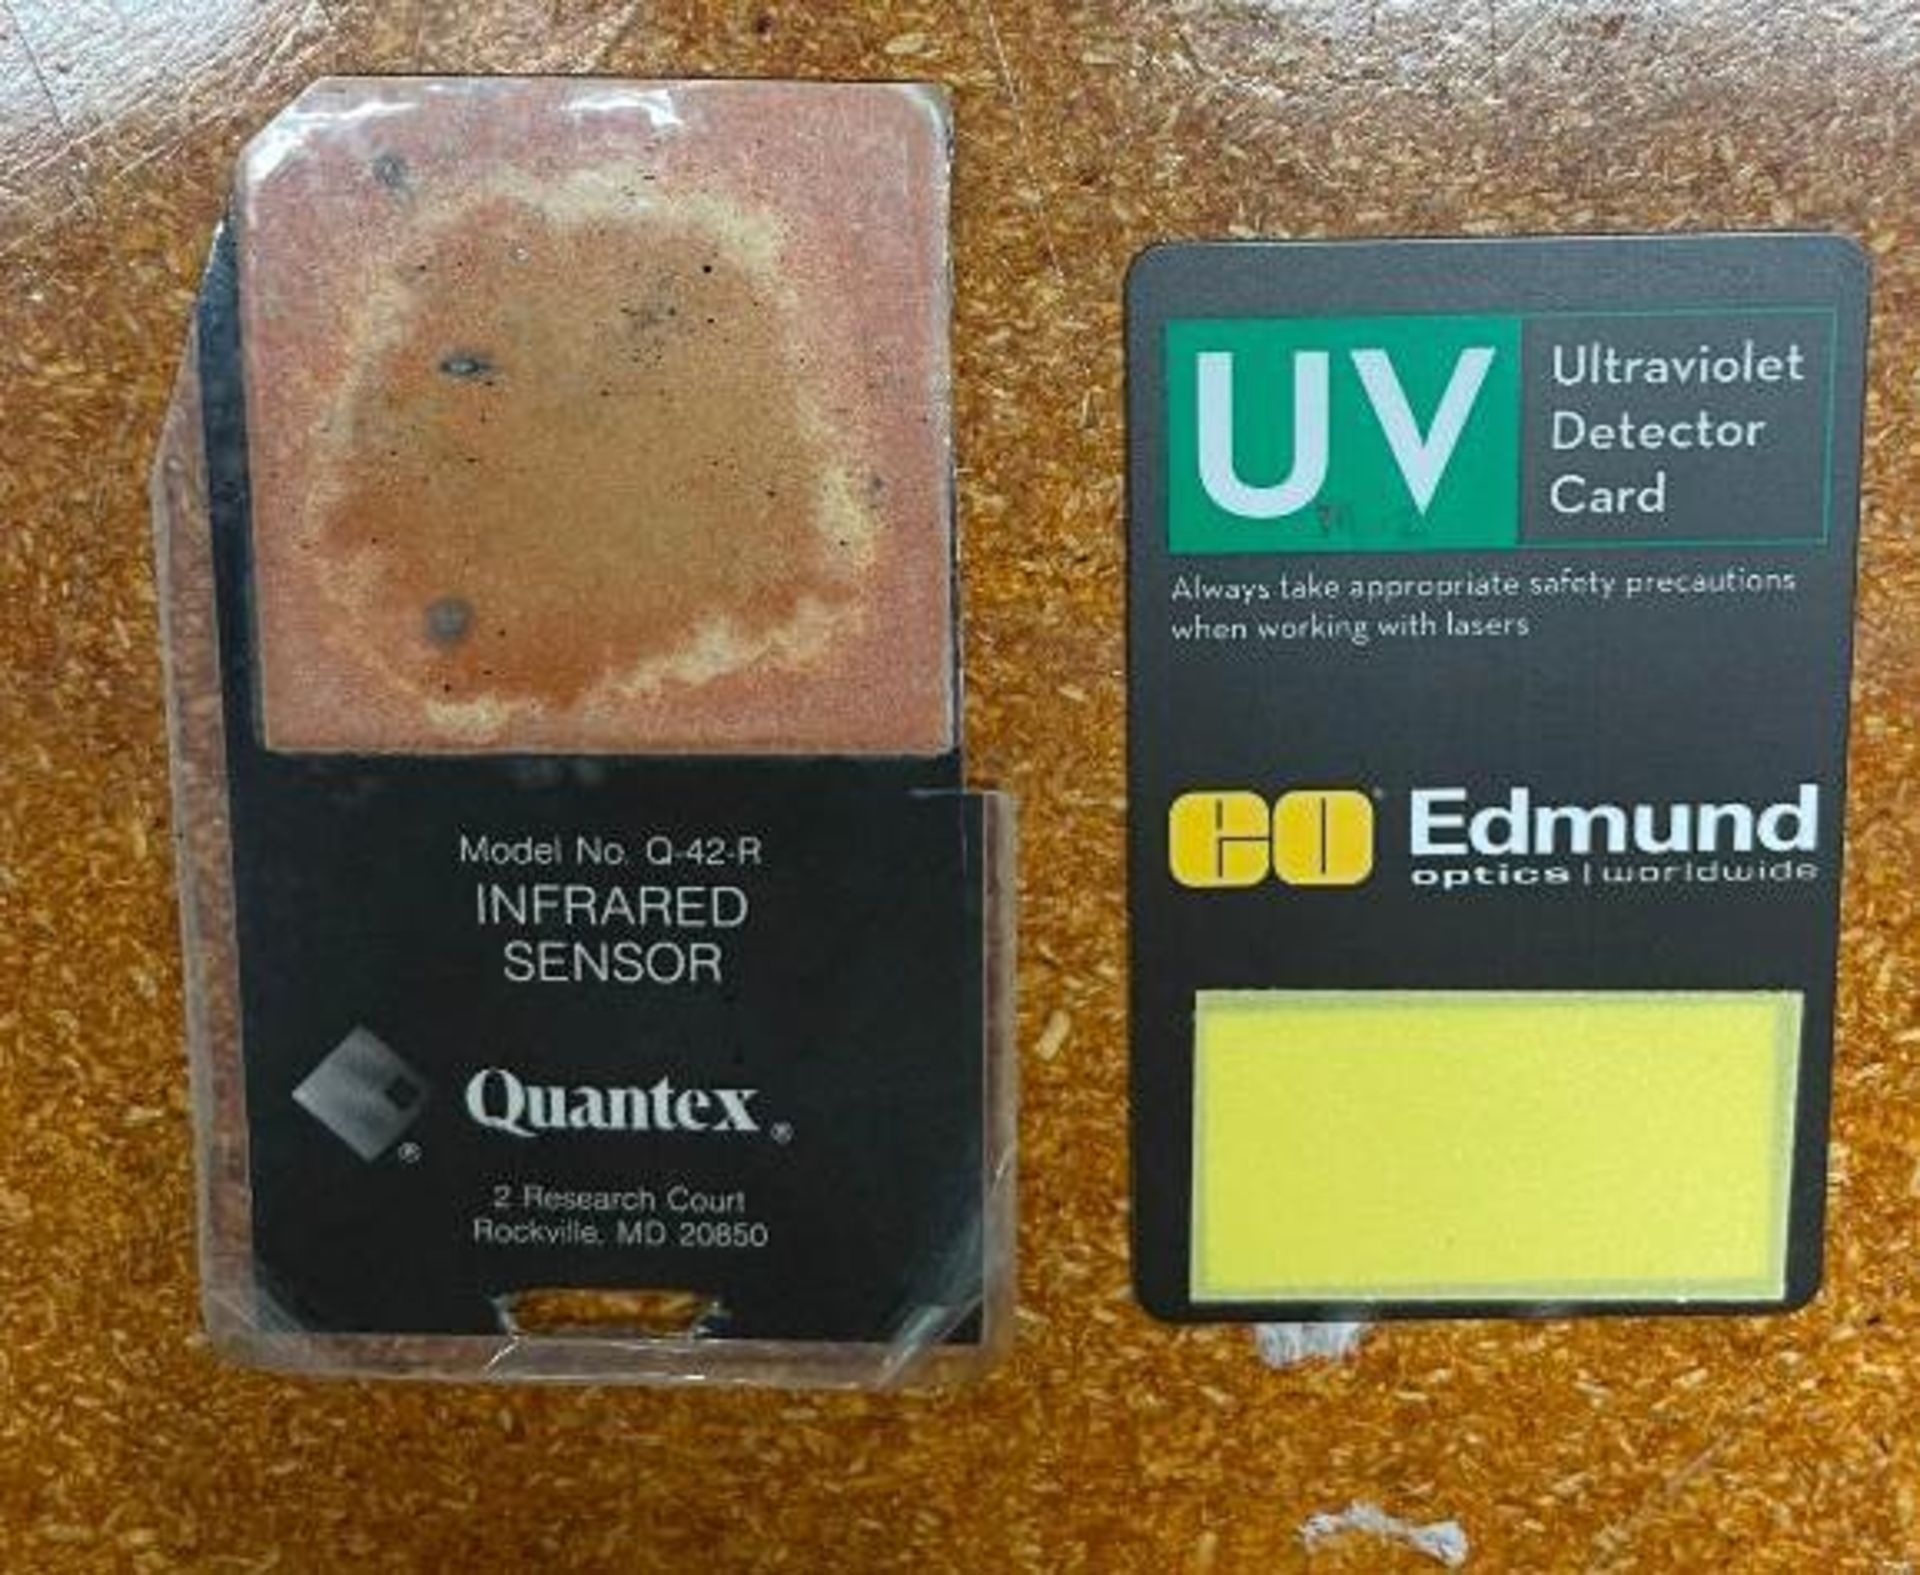 UV DETECTOR CARD AND IR SENSOR CARD BRAND/MODEL: EDMUNDS 55-215 AND QUANTEX 1-42-R QTY: 2